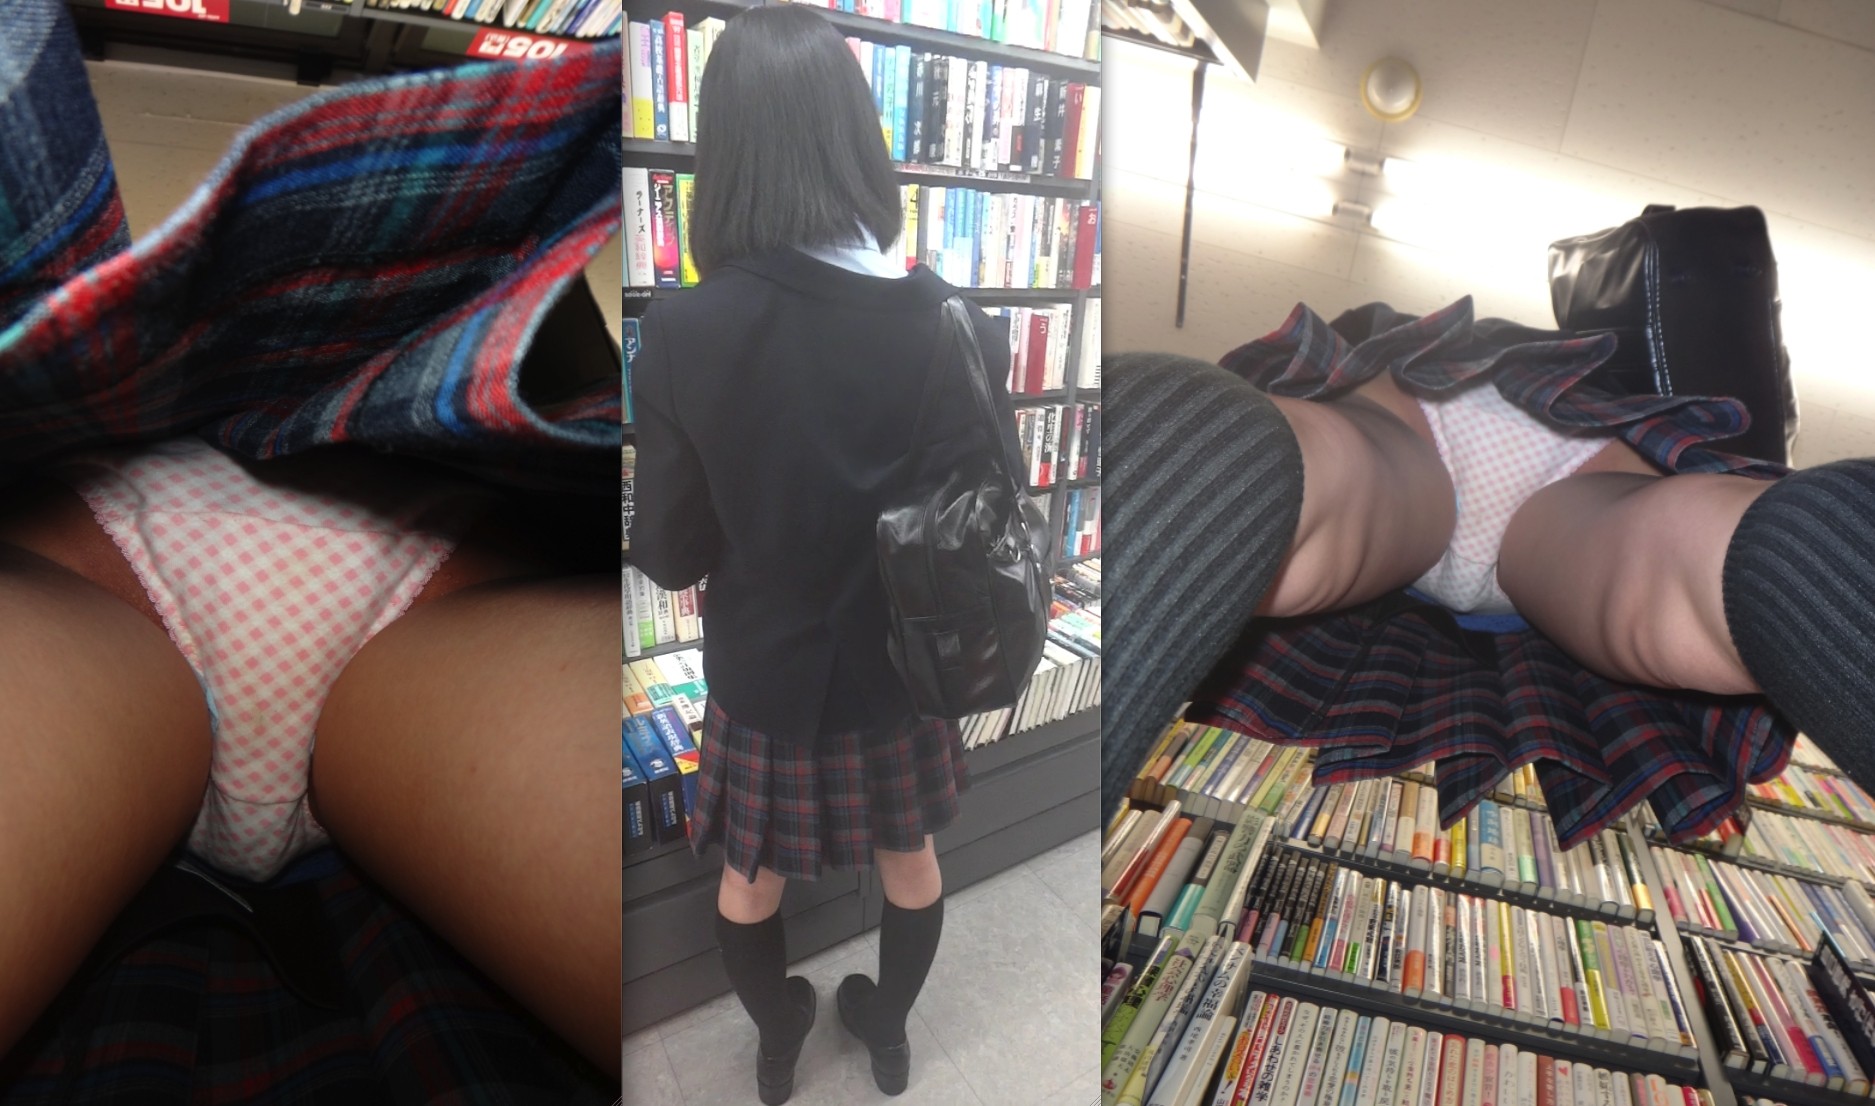 【逆さ撮り】本屋で立ち読みに夢中なJKのスカート内を接写撮りwの画像14枚目